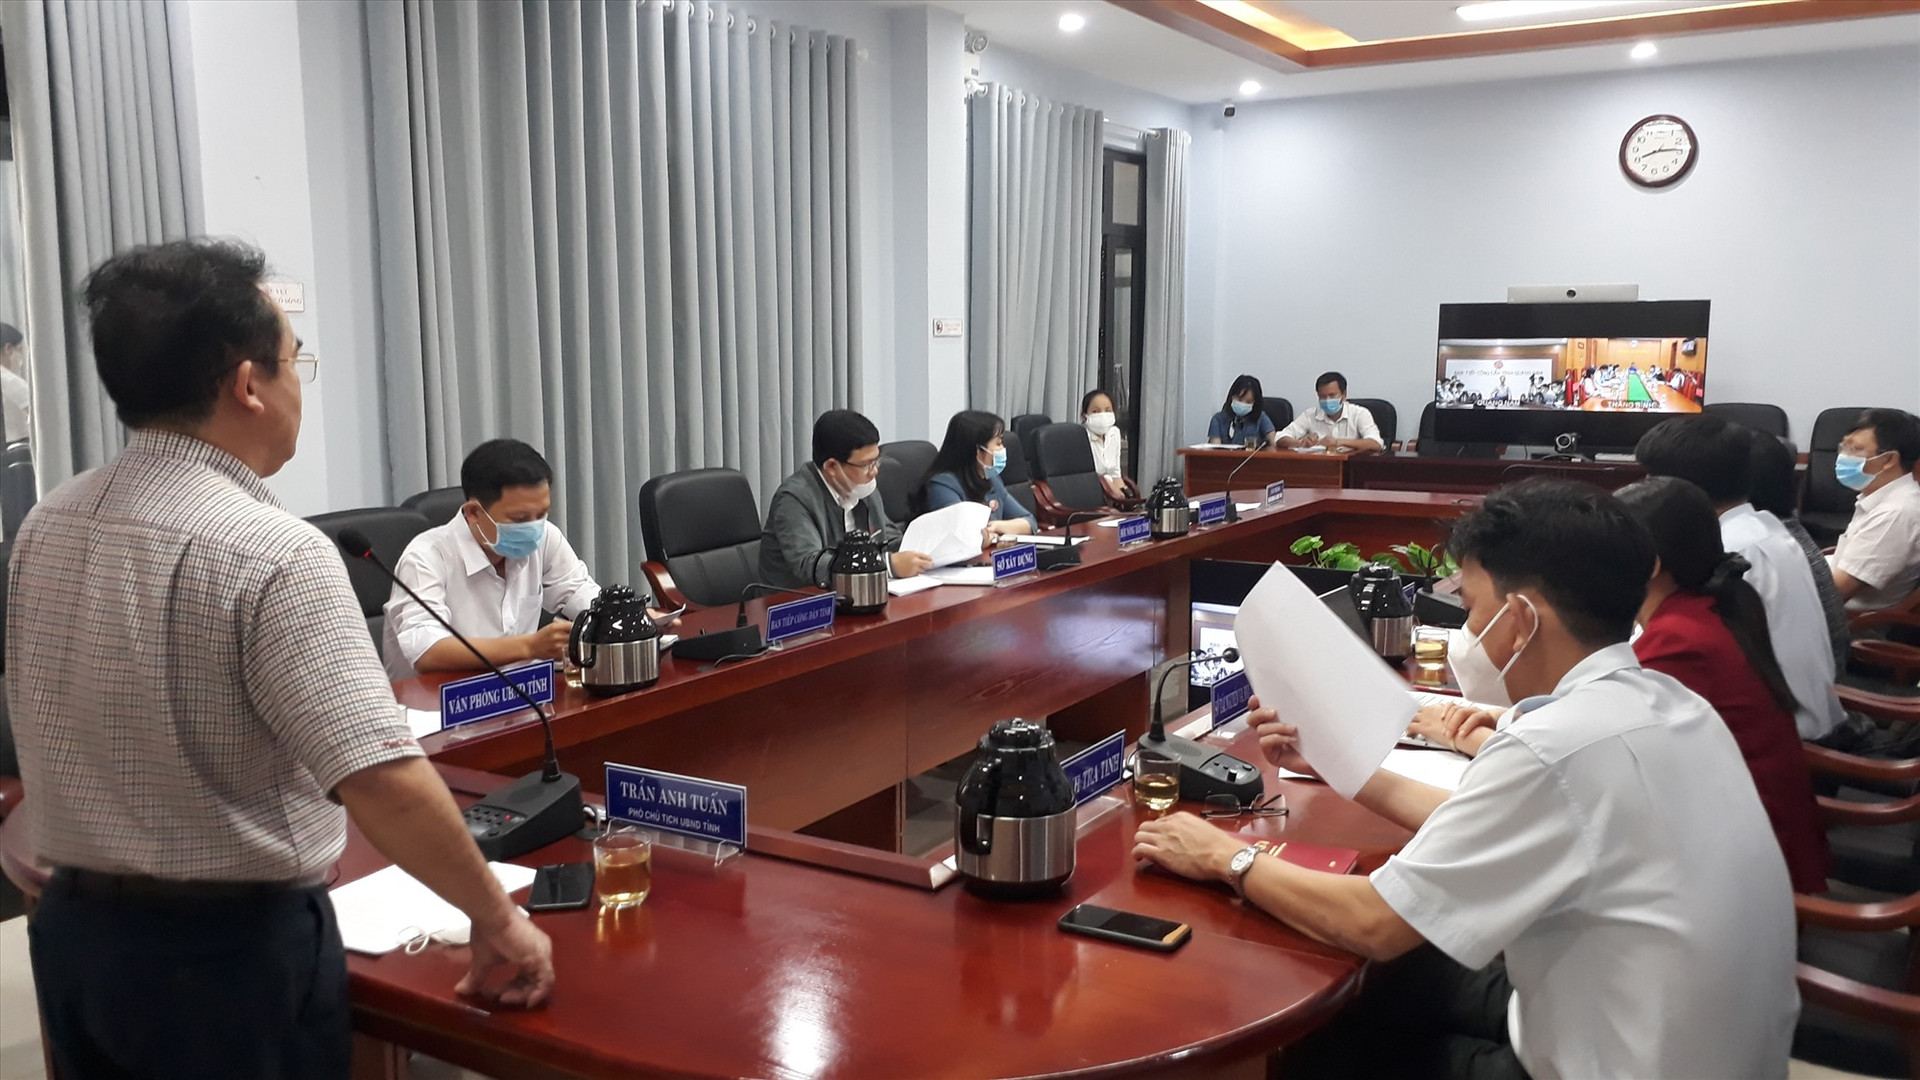 Phó Chủ tịch UBND tỉnh Trần Anh Tuấn yêu cầu các sở, ngành địa phương quan tâm giải quyết kiến nghị của công dân như của mình. Ảnh: X.P